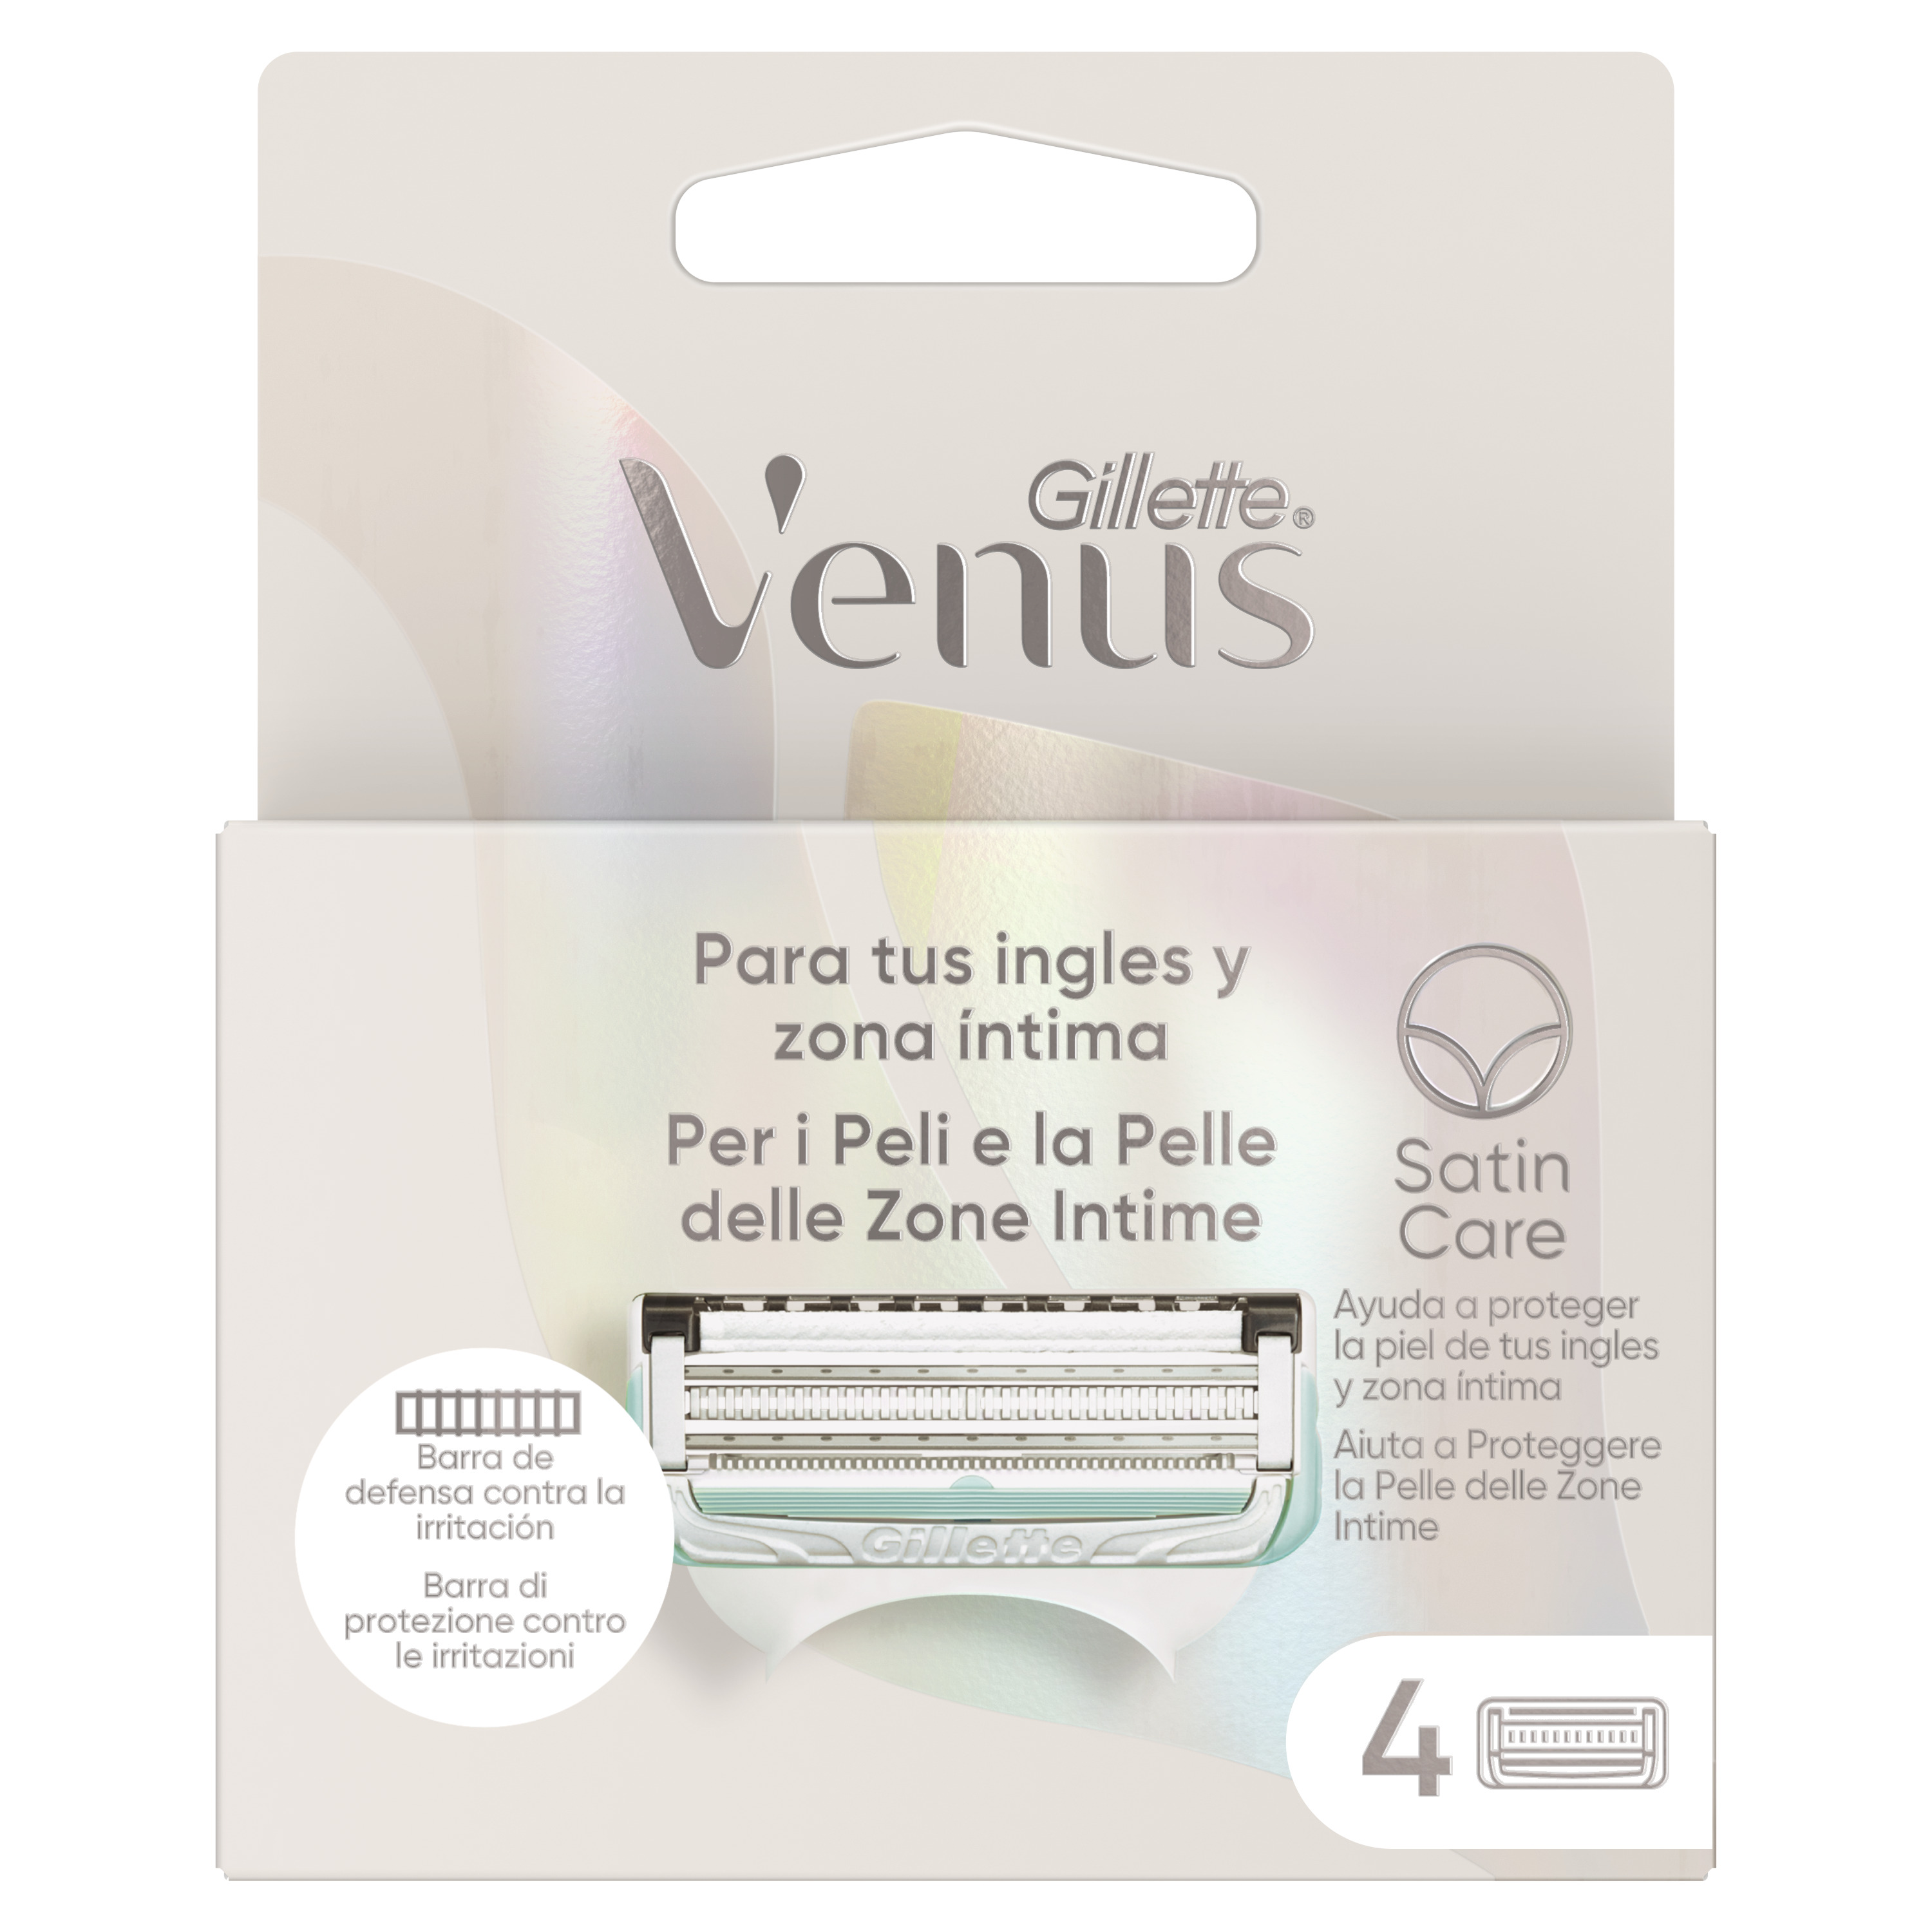 Gillette - Gillette Venus maquinilla de depilación para mujer para ingles y zona intima, pack de 4 recambios